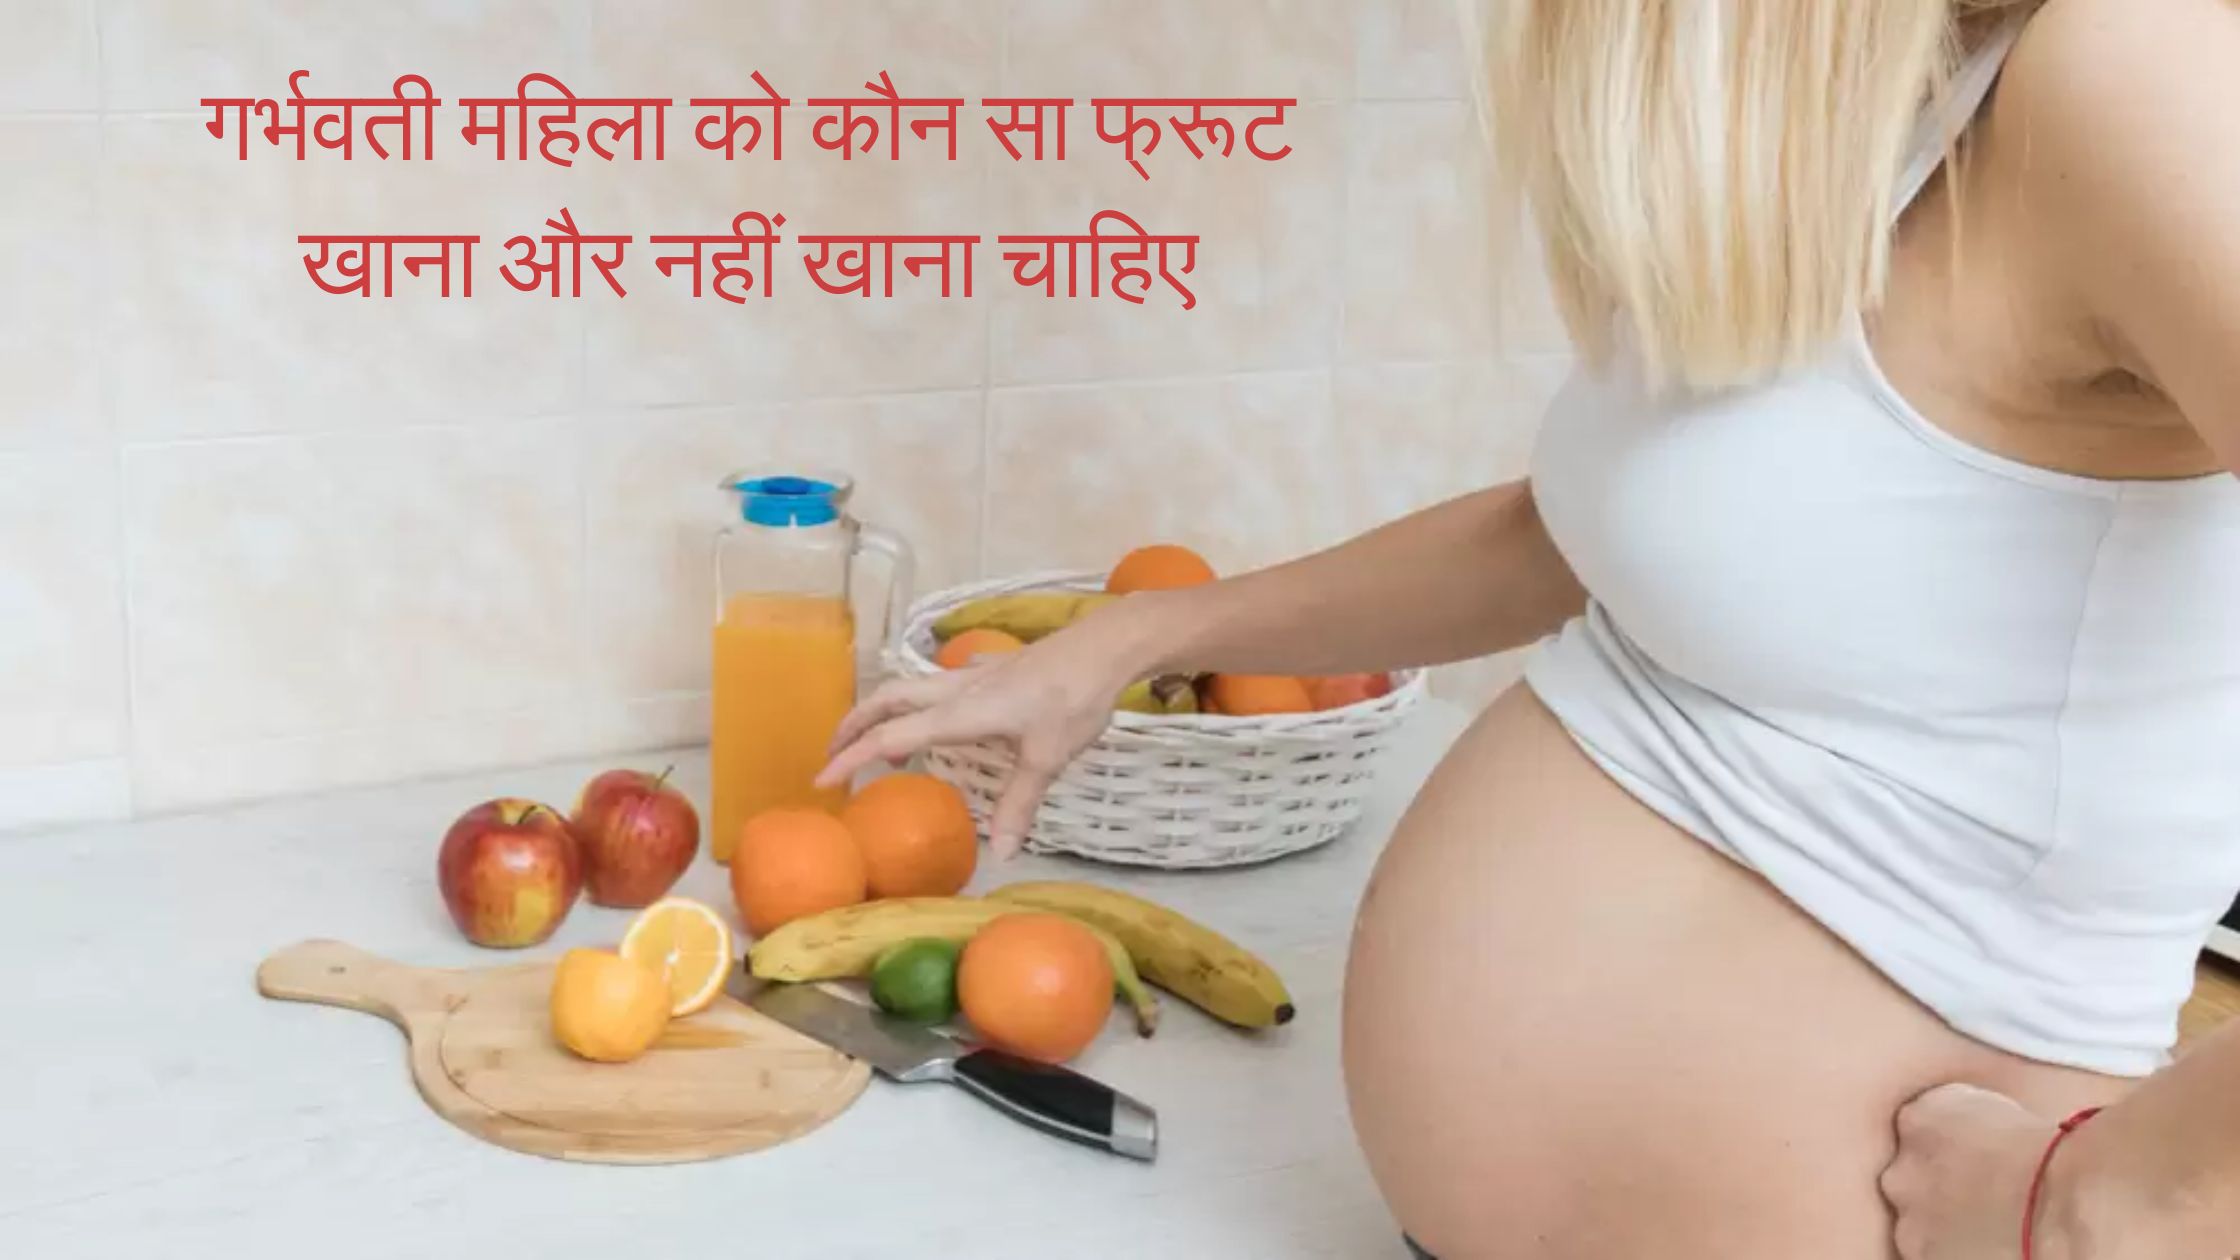 गर्भवती महिला को कौन सा फ्रूट खाना और नहीं खाना चाहिए